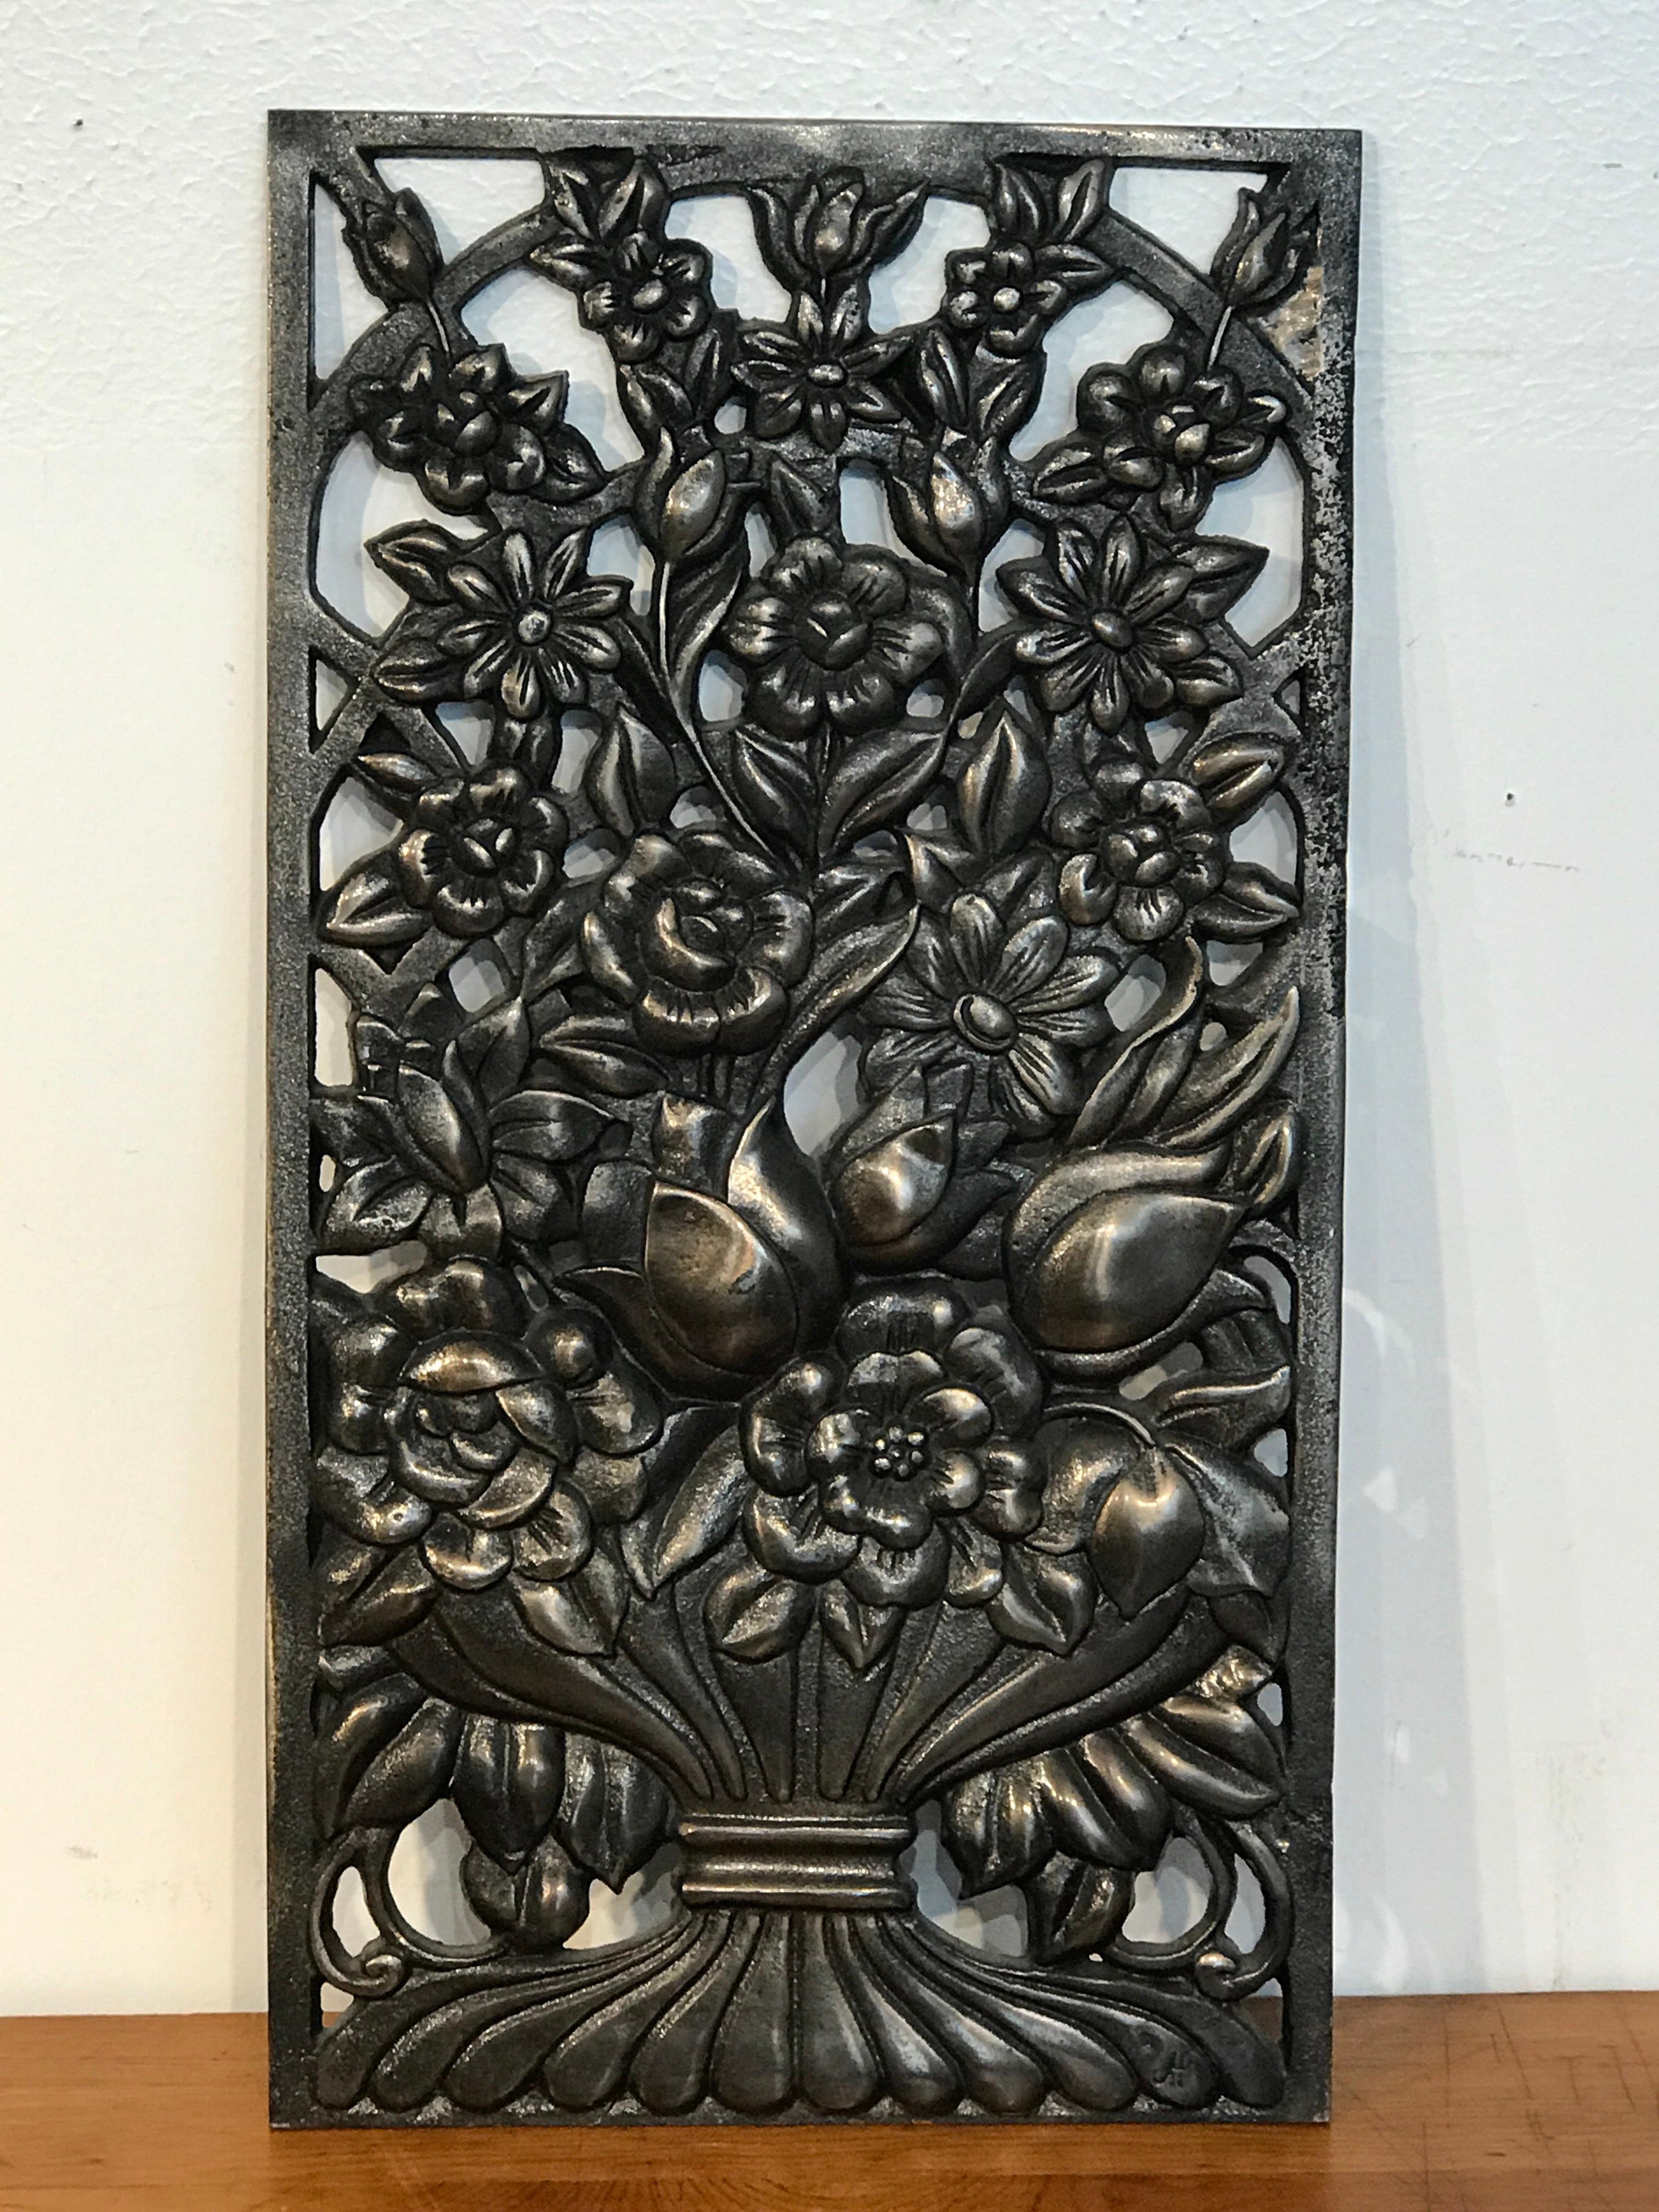 Panneau architectural Art déco en bronze à motif floral, quatre disponibles, chacun de forme rectangulaire avec nature morte florale percée.
